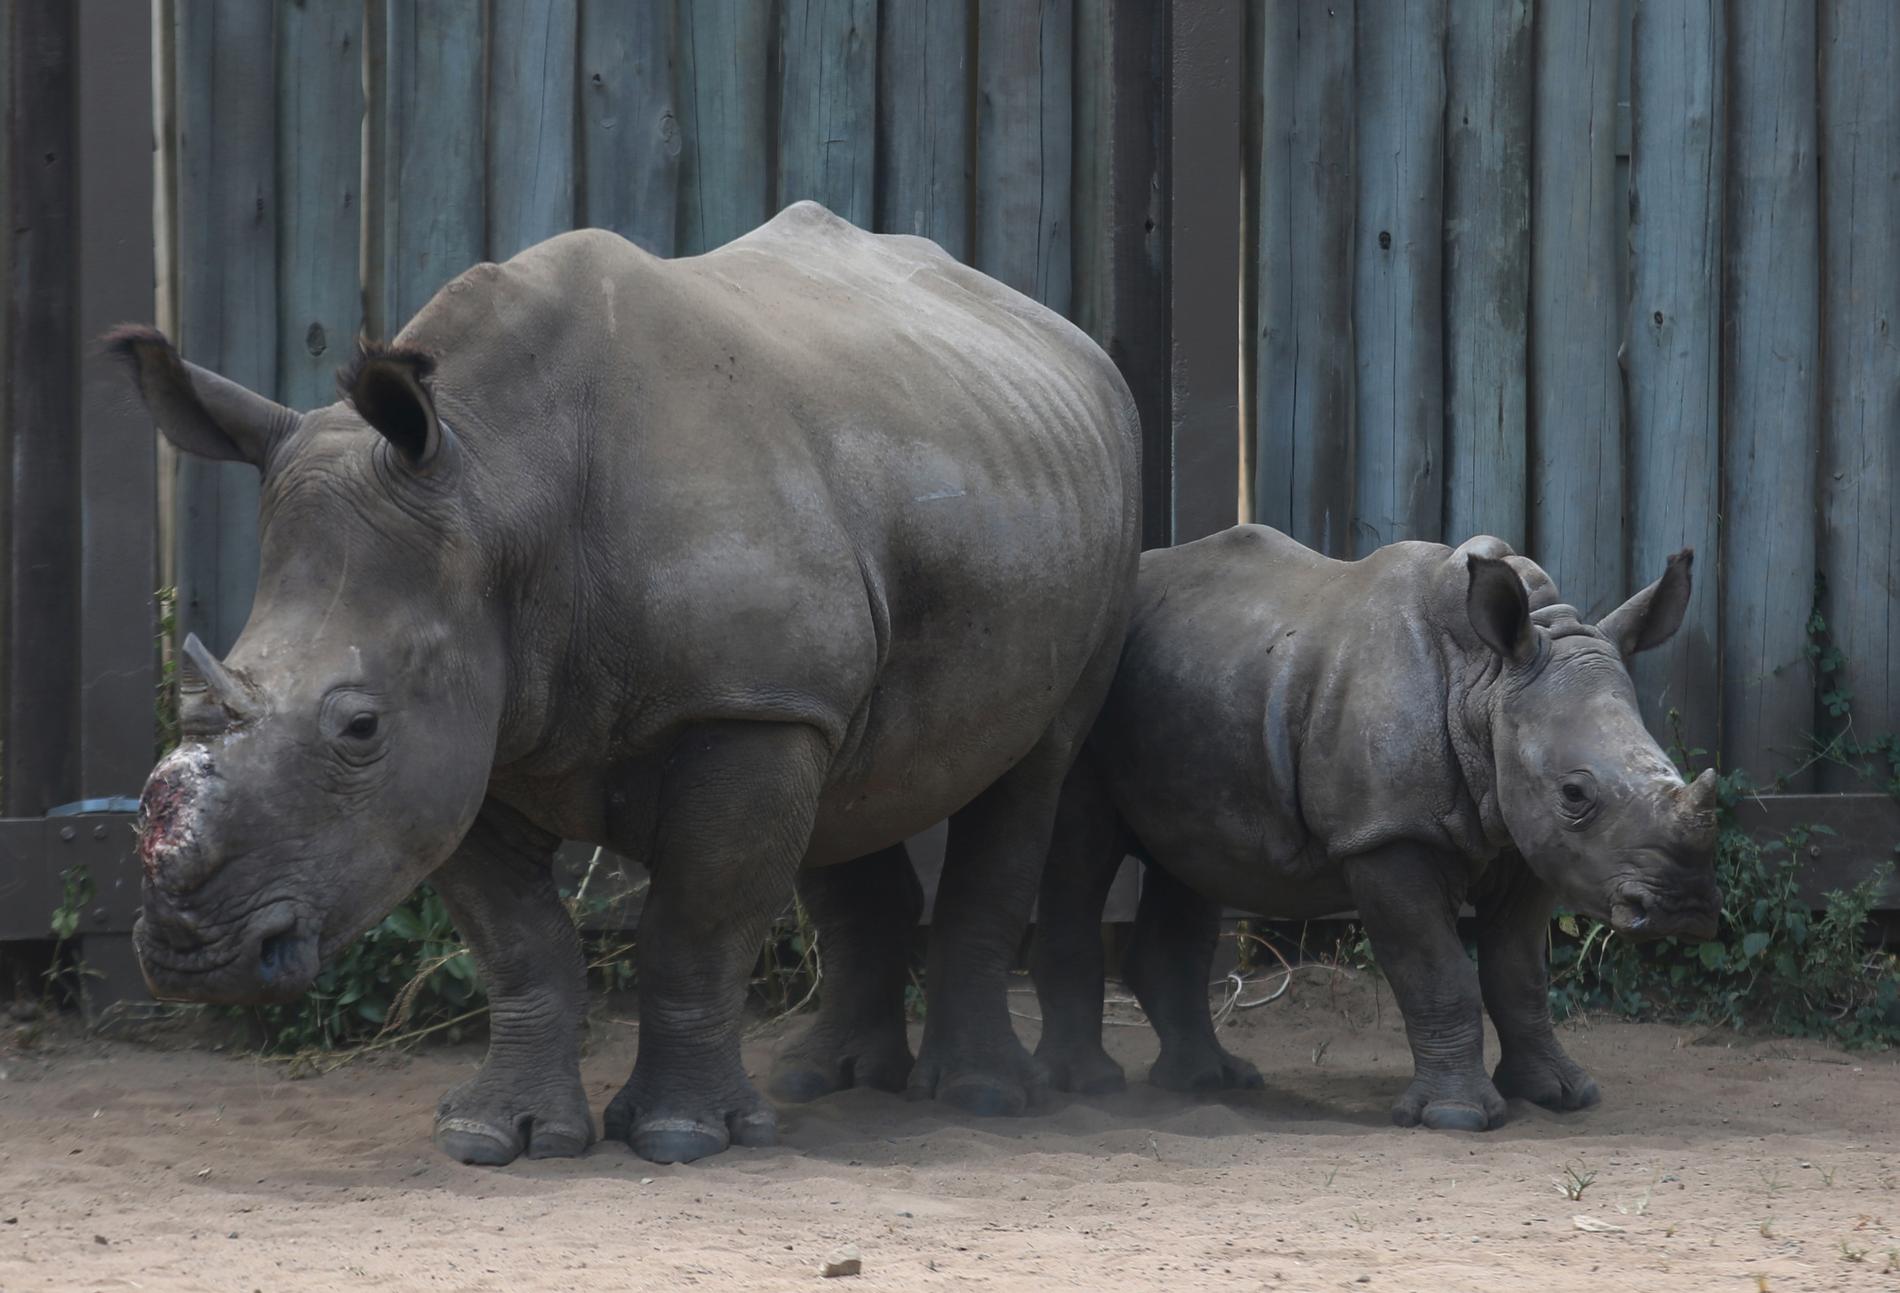 En noshörningsunge tillsammans med sin stympade mor. Bilden är från Sydafrika, där djuren till stor del jagas på grund av efterfrågan på noshörningshorn i just Vietnam. Arkivbild.